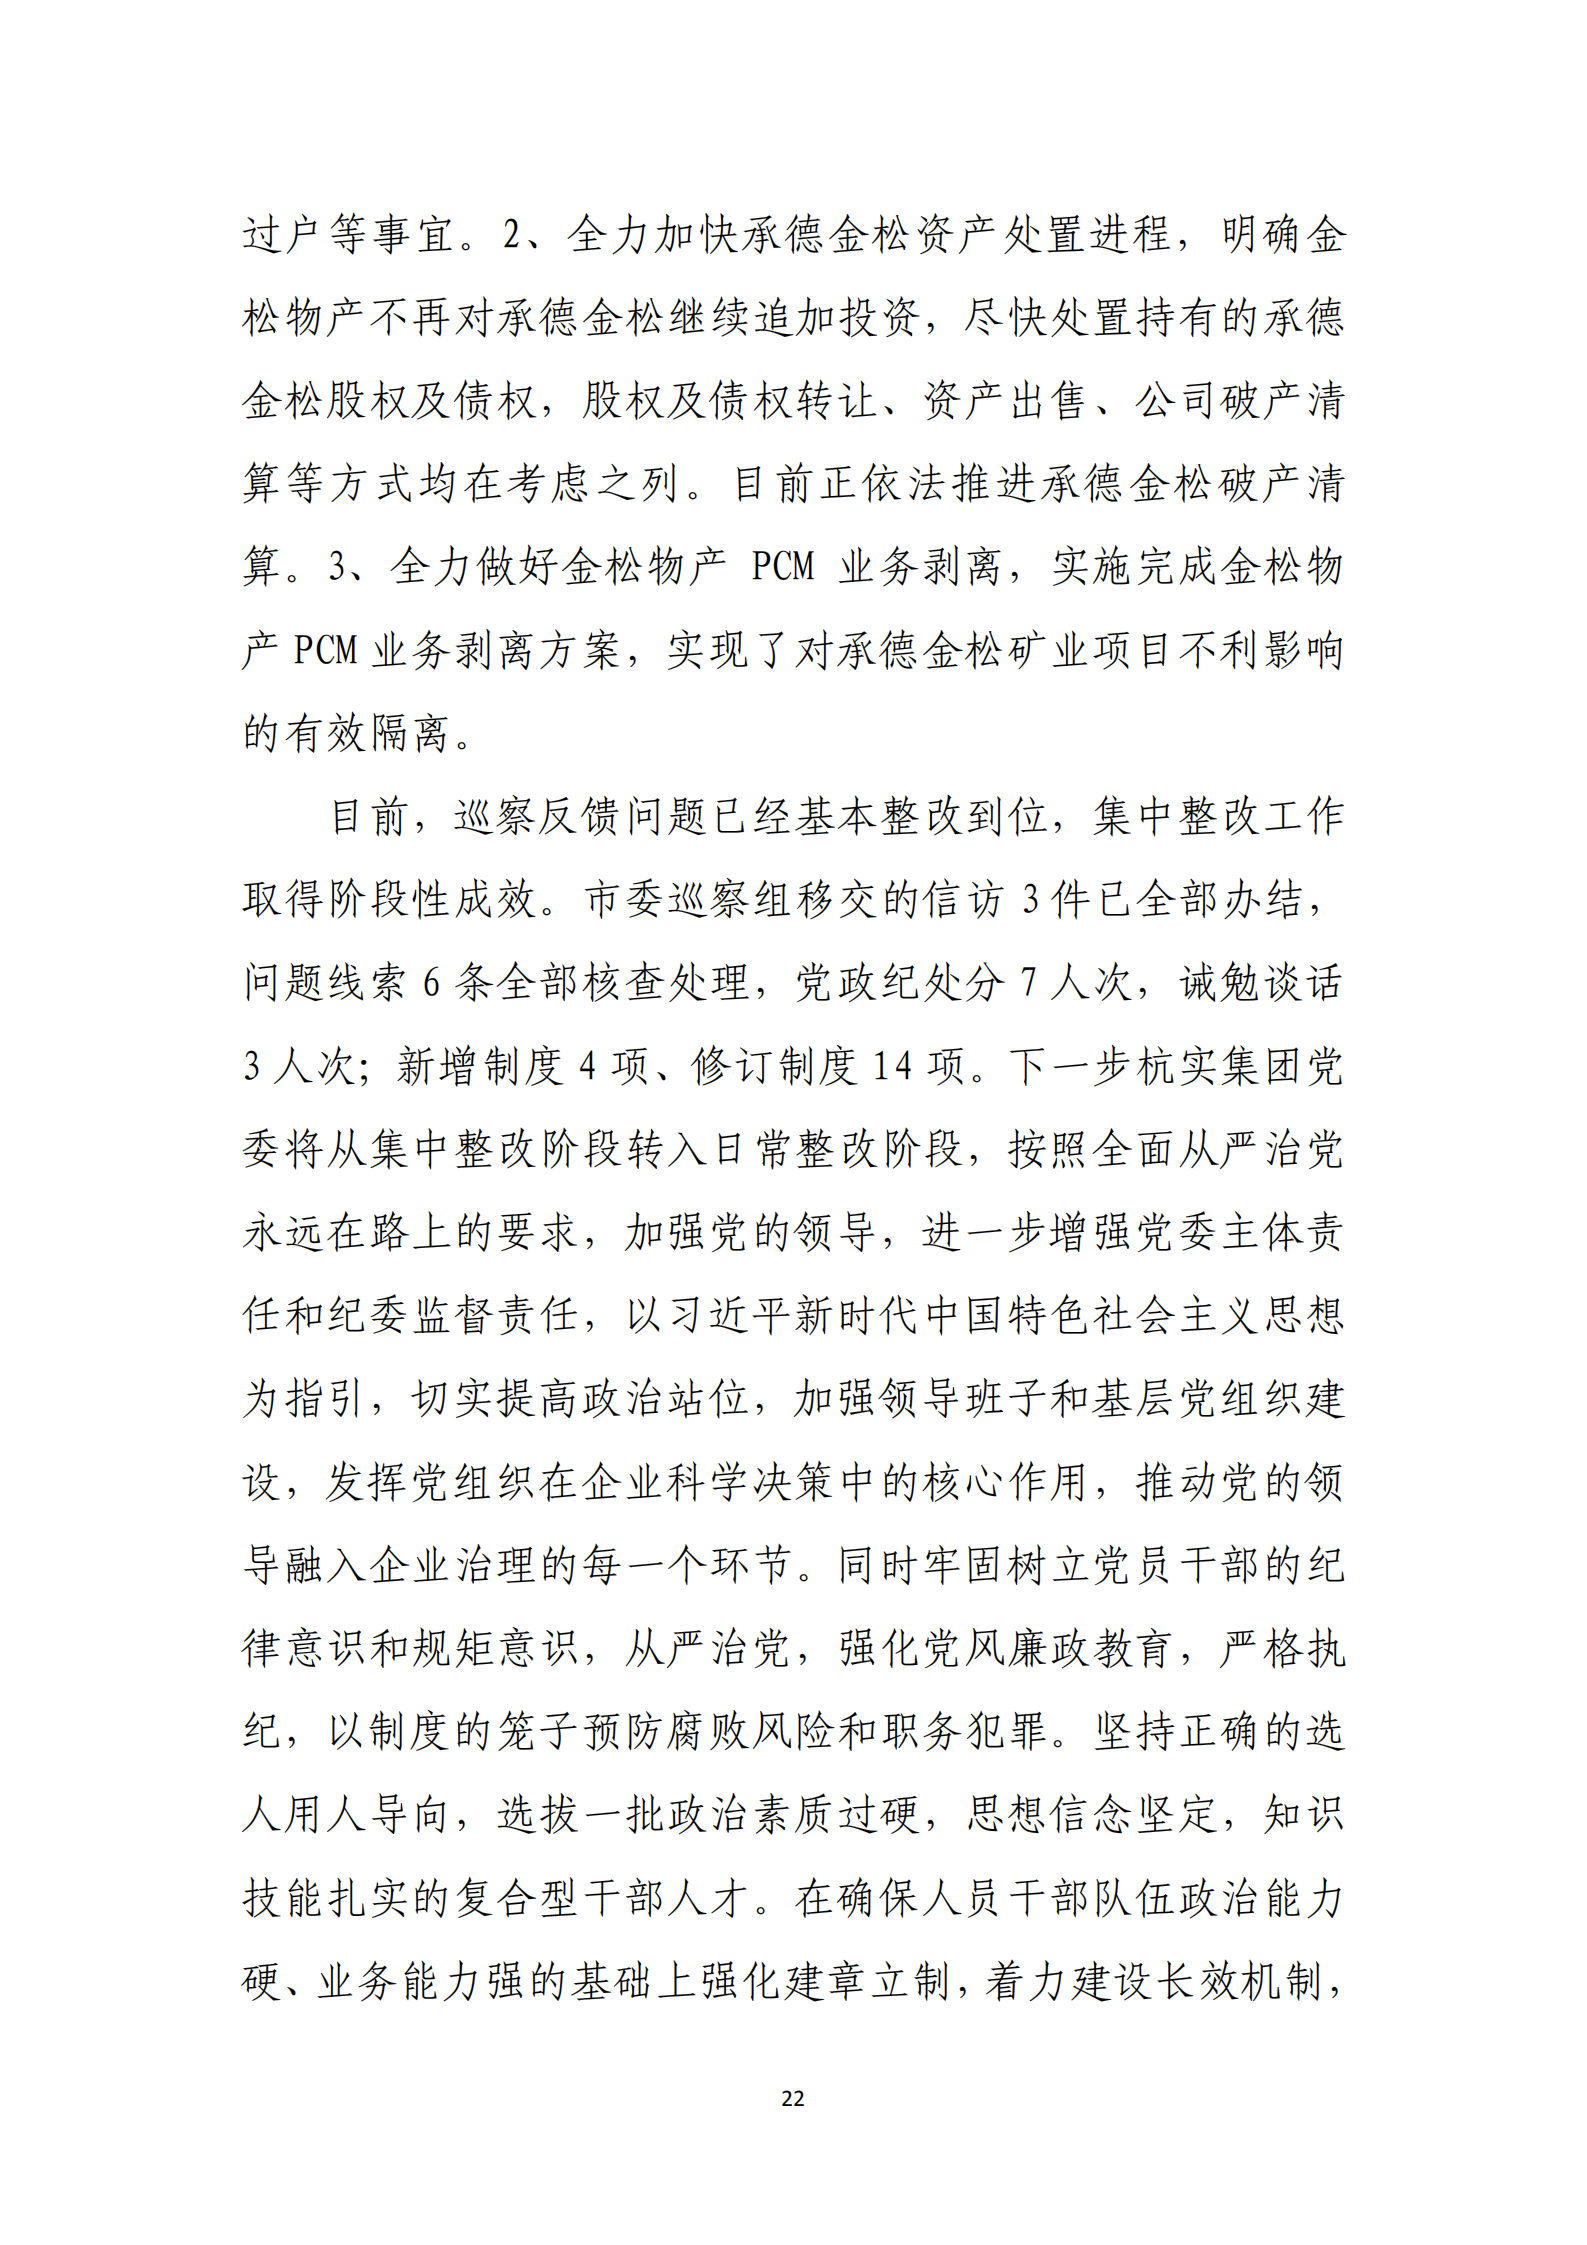 【体育365官方网站】中国有限公司党委关于巡察整改情况的通报_21.png